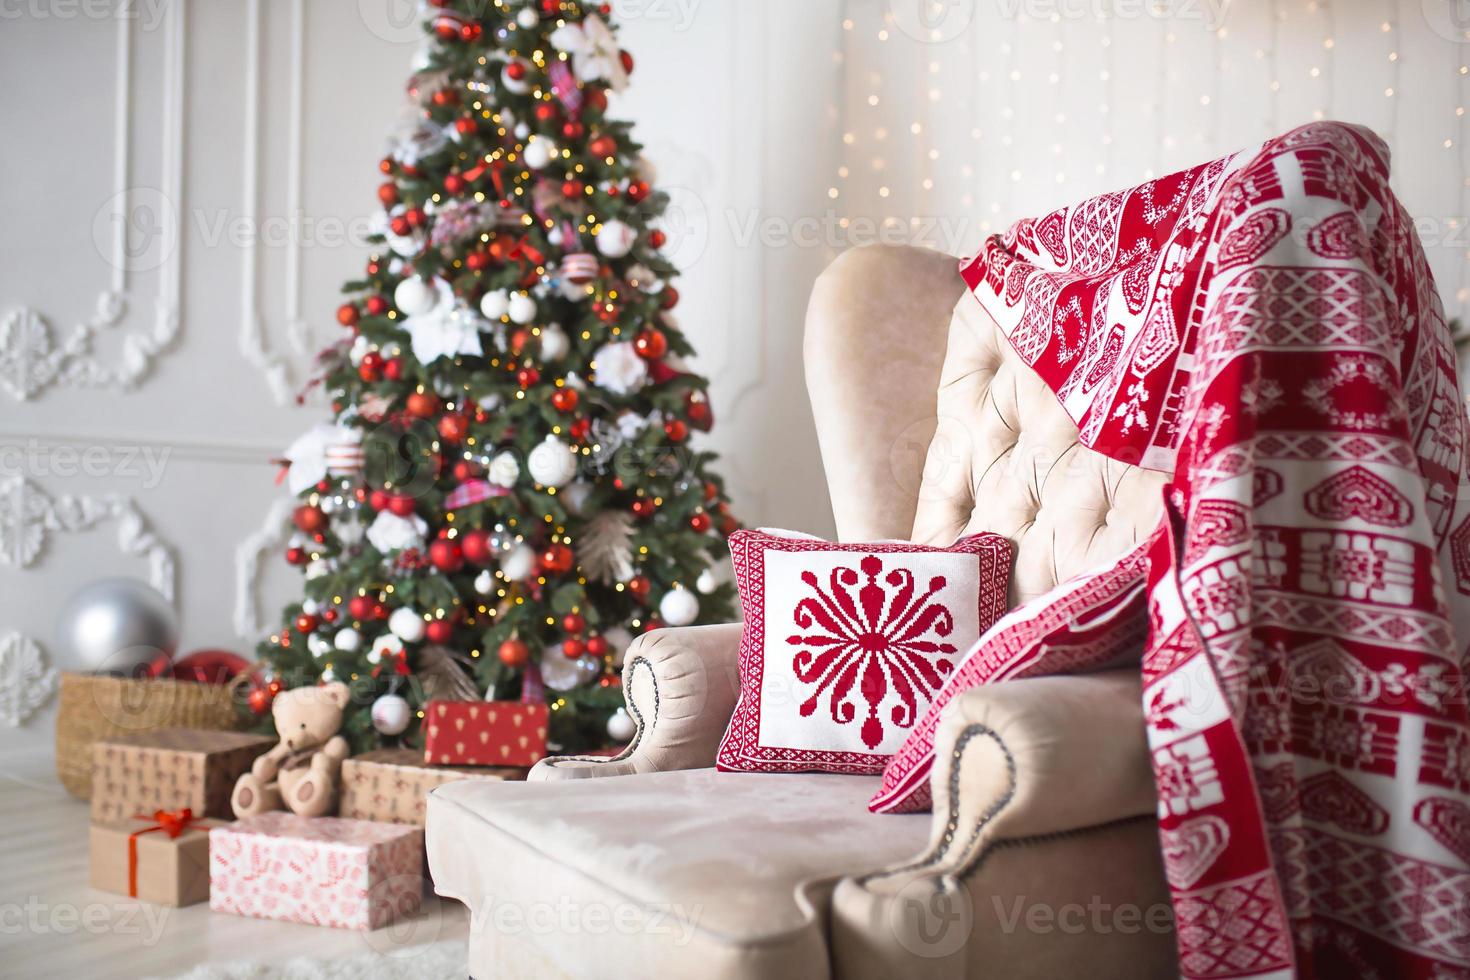 árvore de natal com decoração vermelha e branca em uma sala branca com presentes em caixas, uma cadeira com almofadas e um cobertor com enfeites de inverno, uma lareira, um tapete de pele. ano novo, estilo europeu. foto